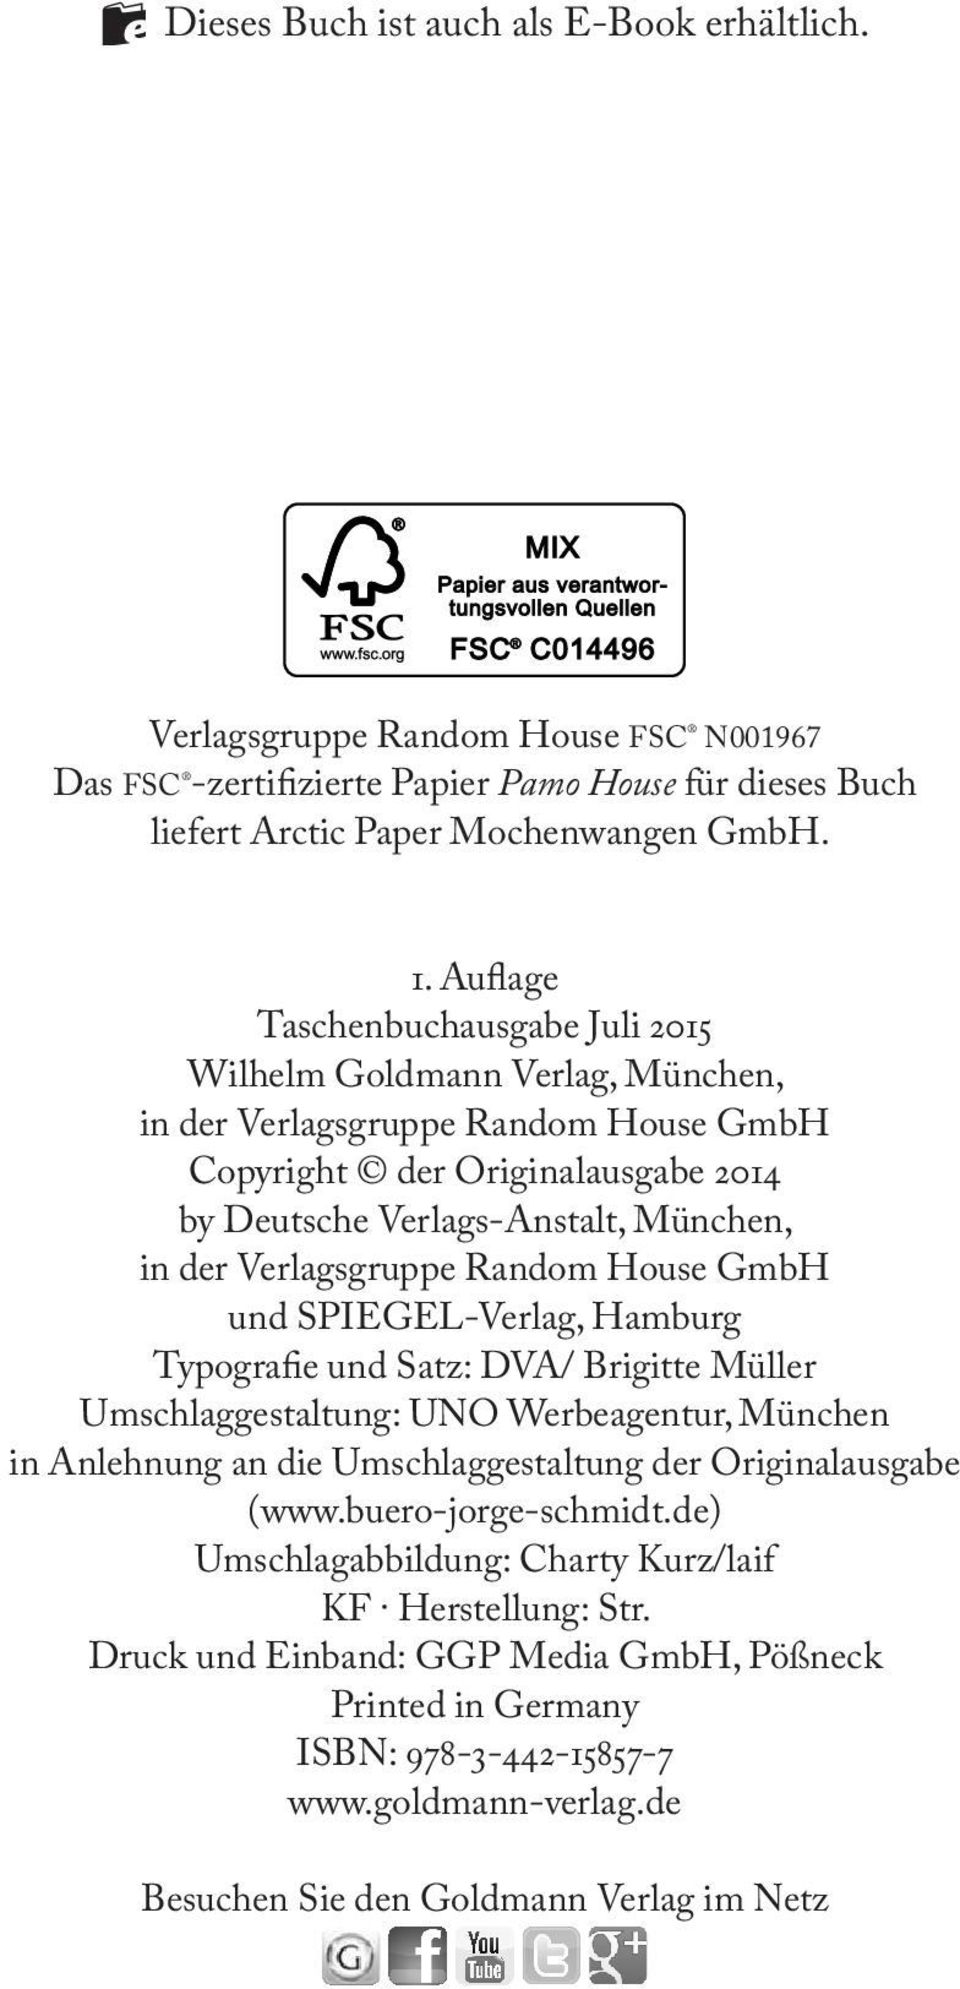 Verlagsgruppe Random House GmbH und SPIEGEL-Verlag, Hamburg Typografie und Satz: DVA/ Brigitte Müller Umschlaggestaltung: UNO Werbeagentur, München in Anlehnung an die Umschlaggestaltung der